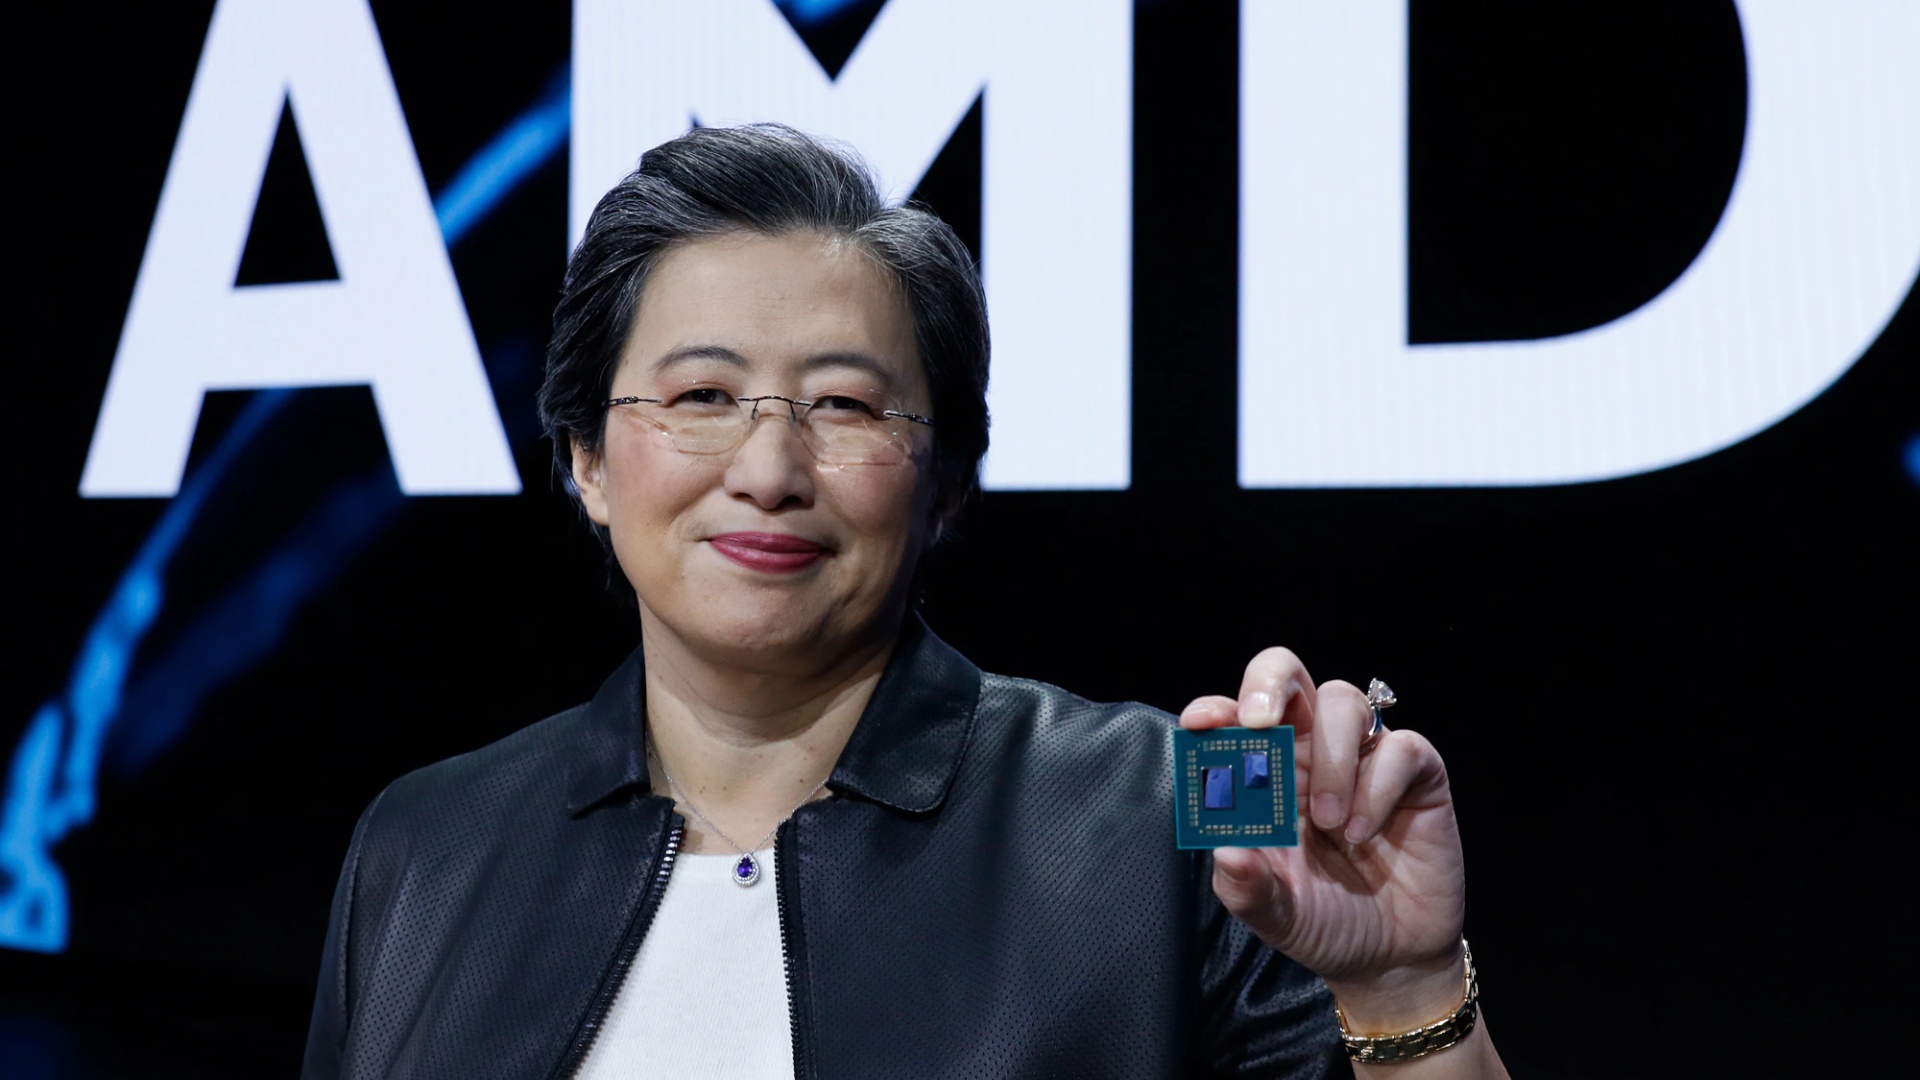 #AMD sorgt für knappe CPUs und Grafikkarten: »Wir tun das nicht, um die Preise hoch zu halten«